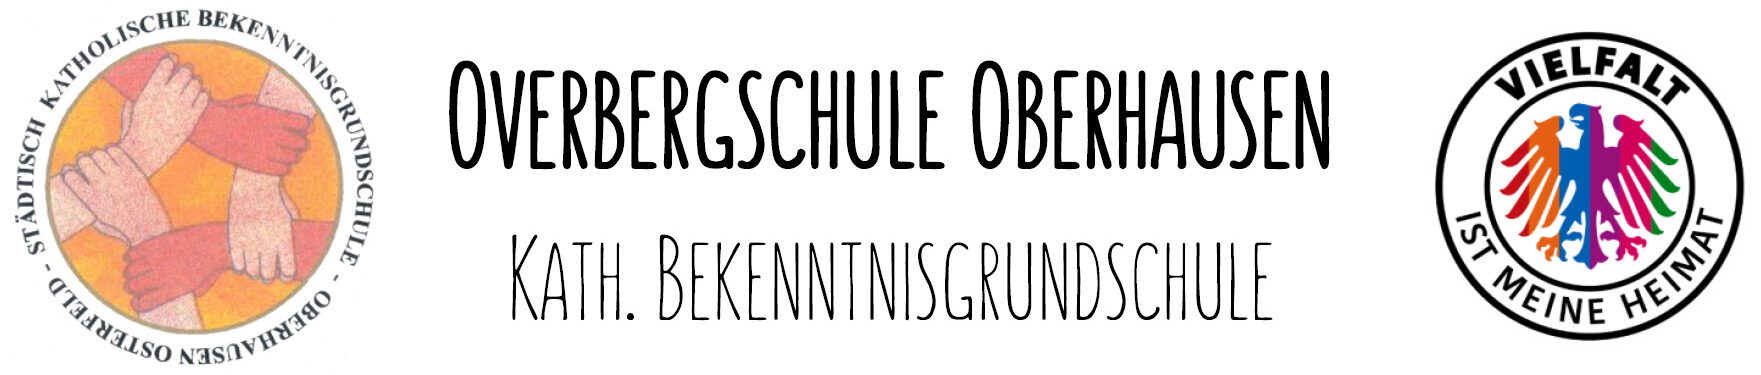 Overbergschule Oberhausen